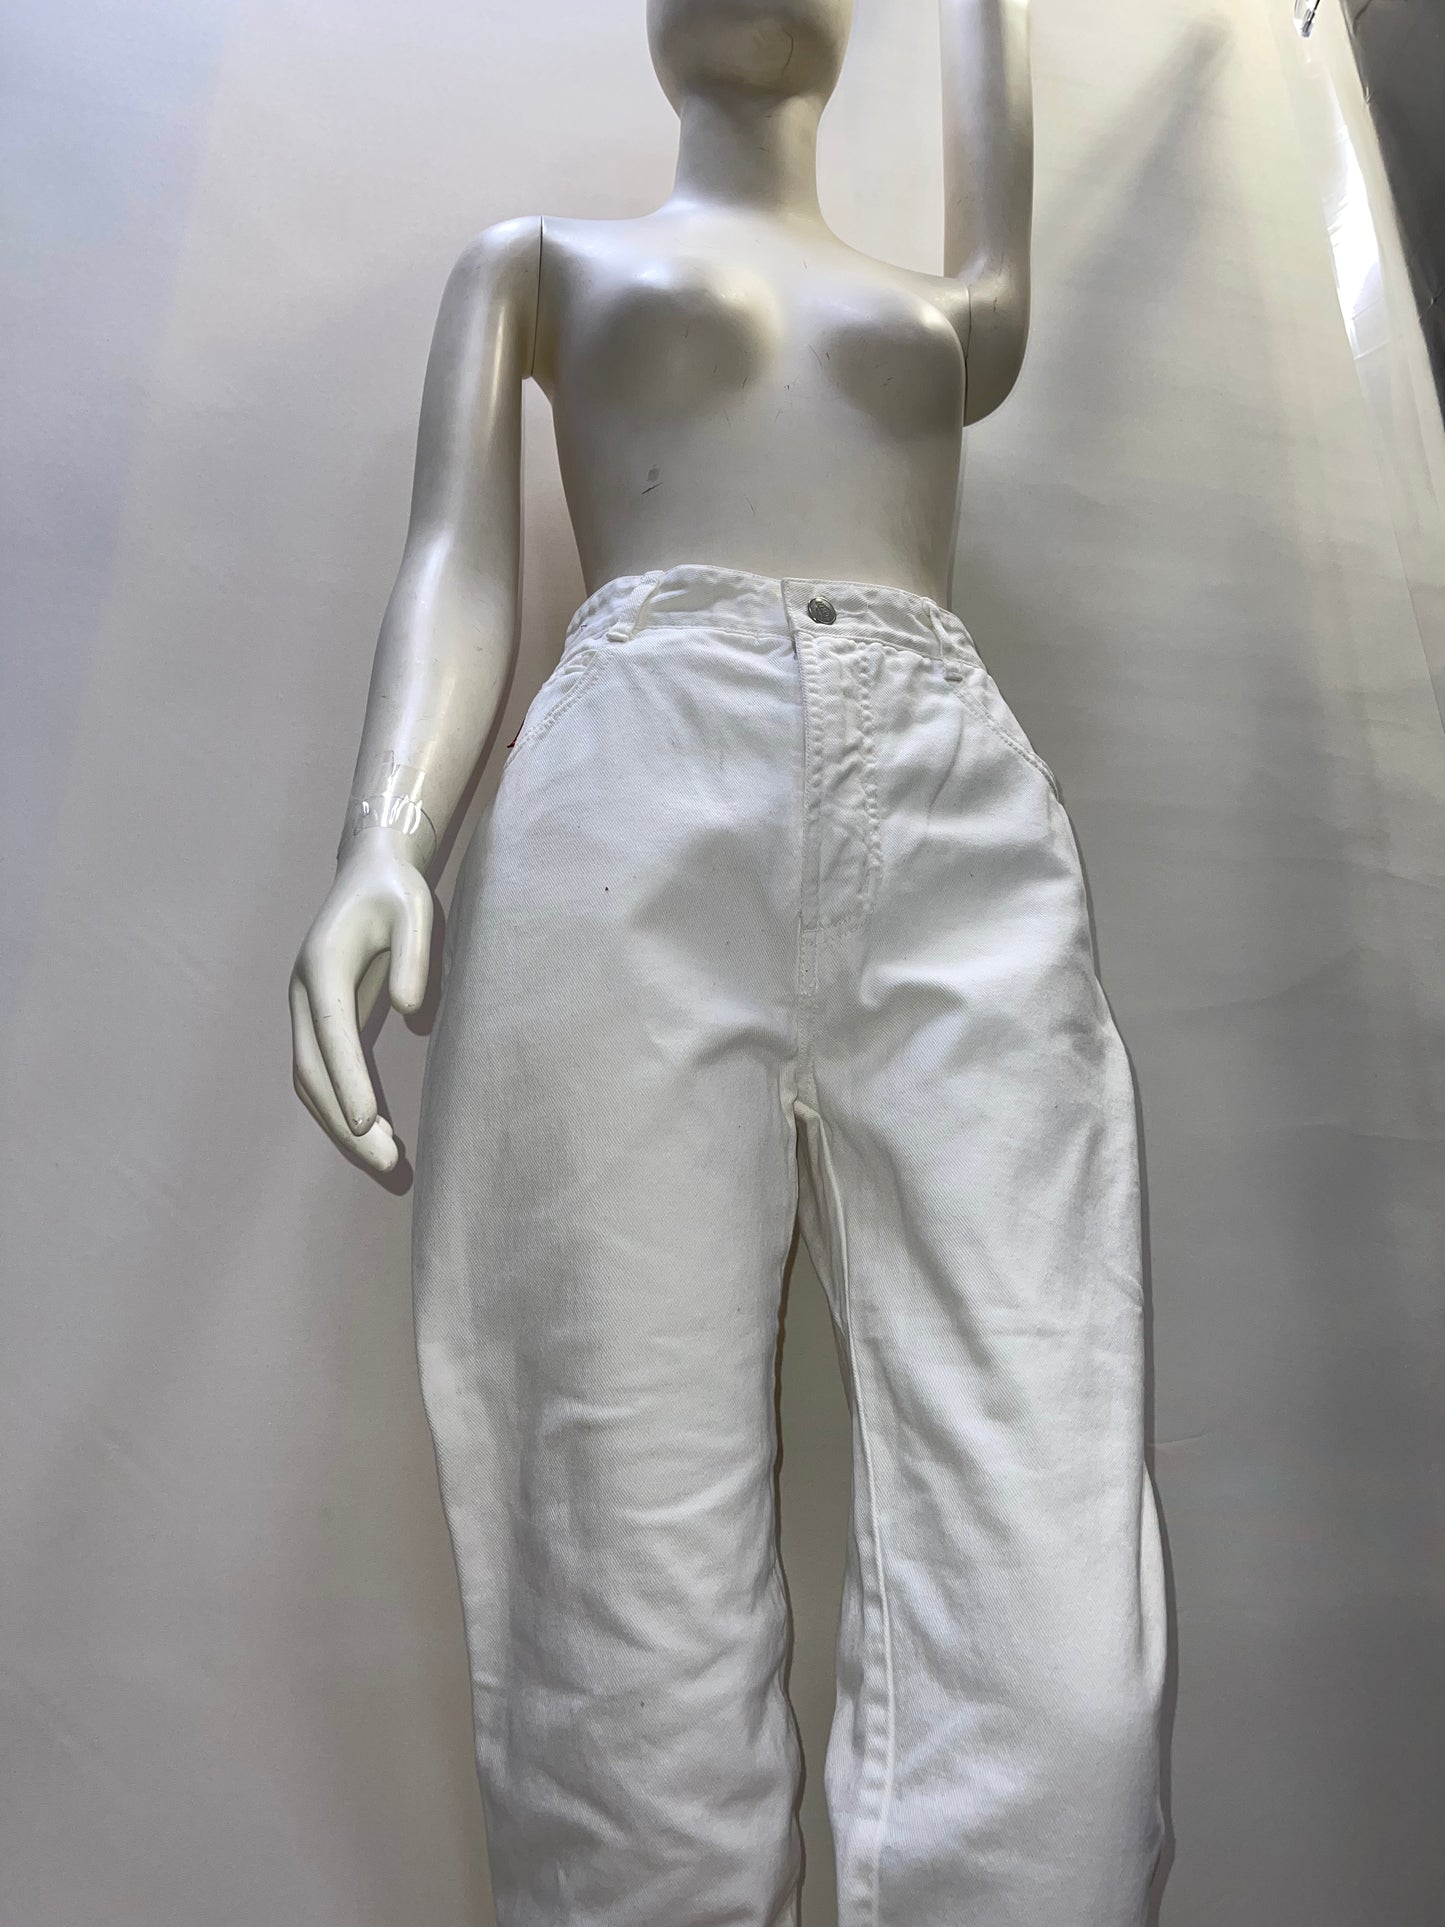 Bongo White Jeans Size 7